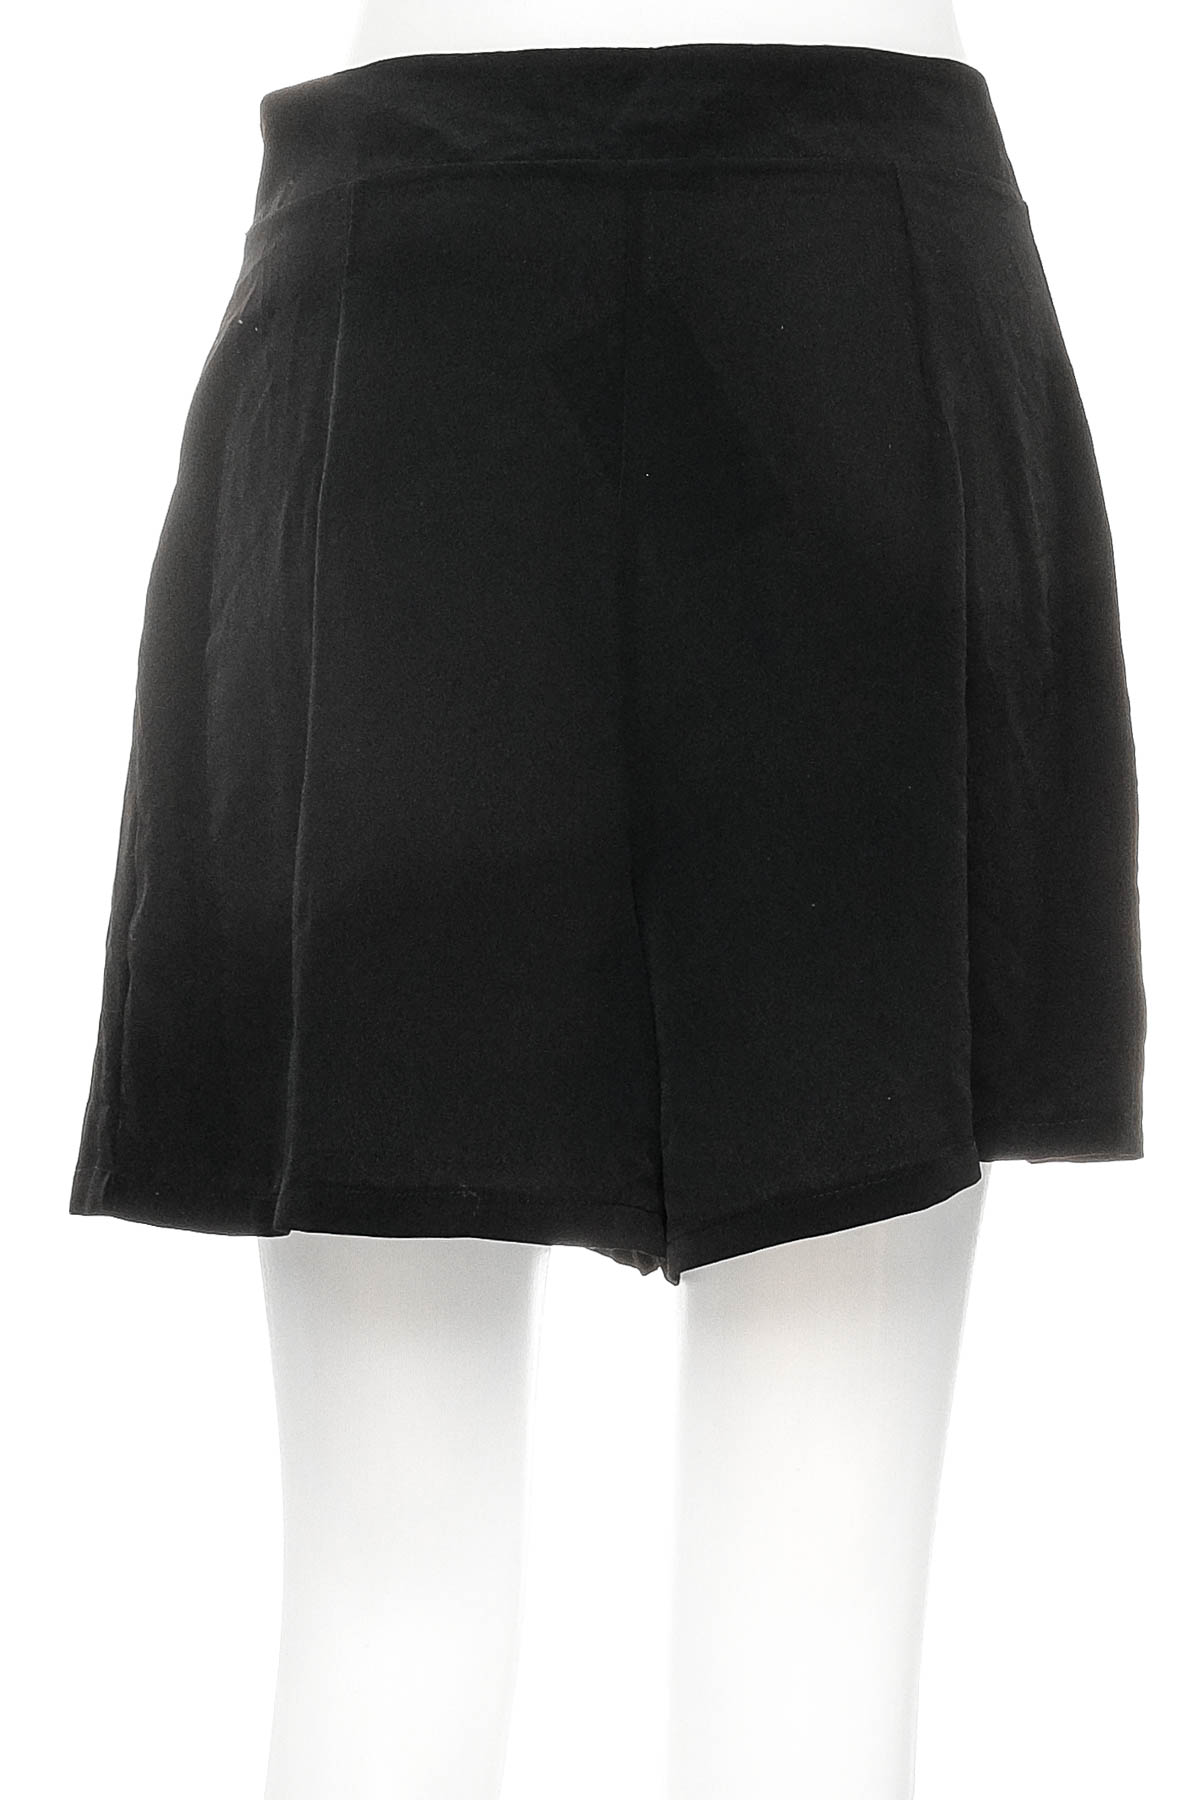 Female shorts - Kiomi - 1